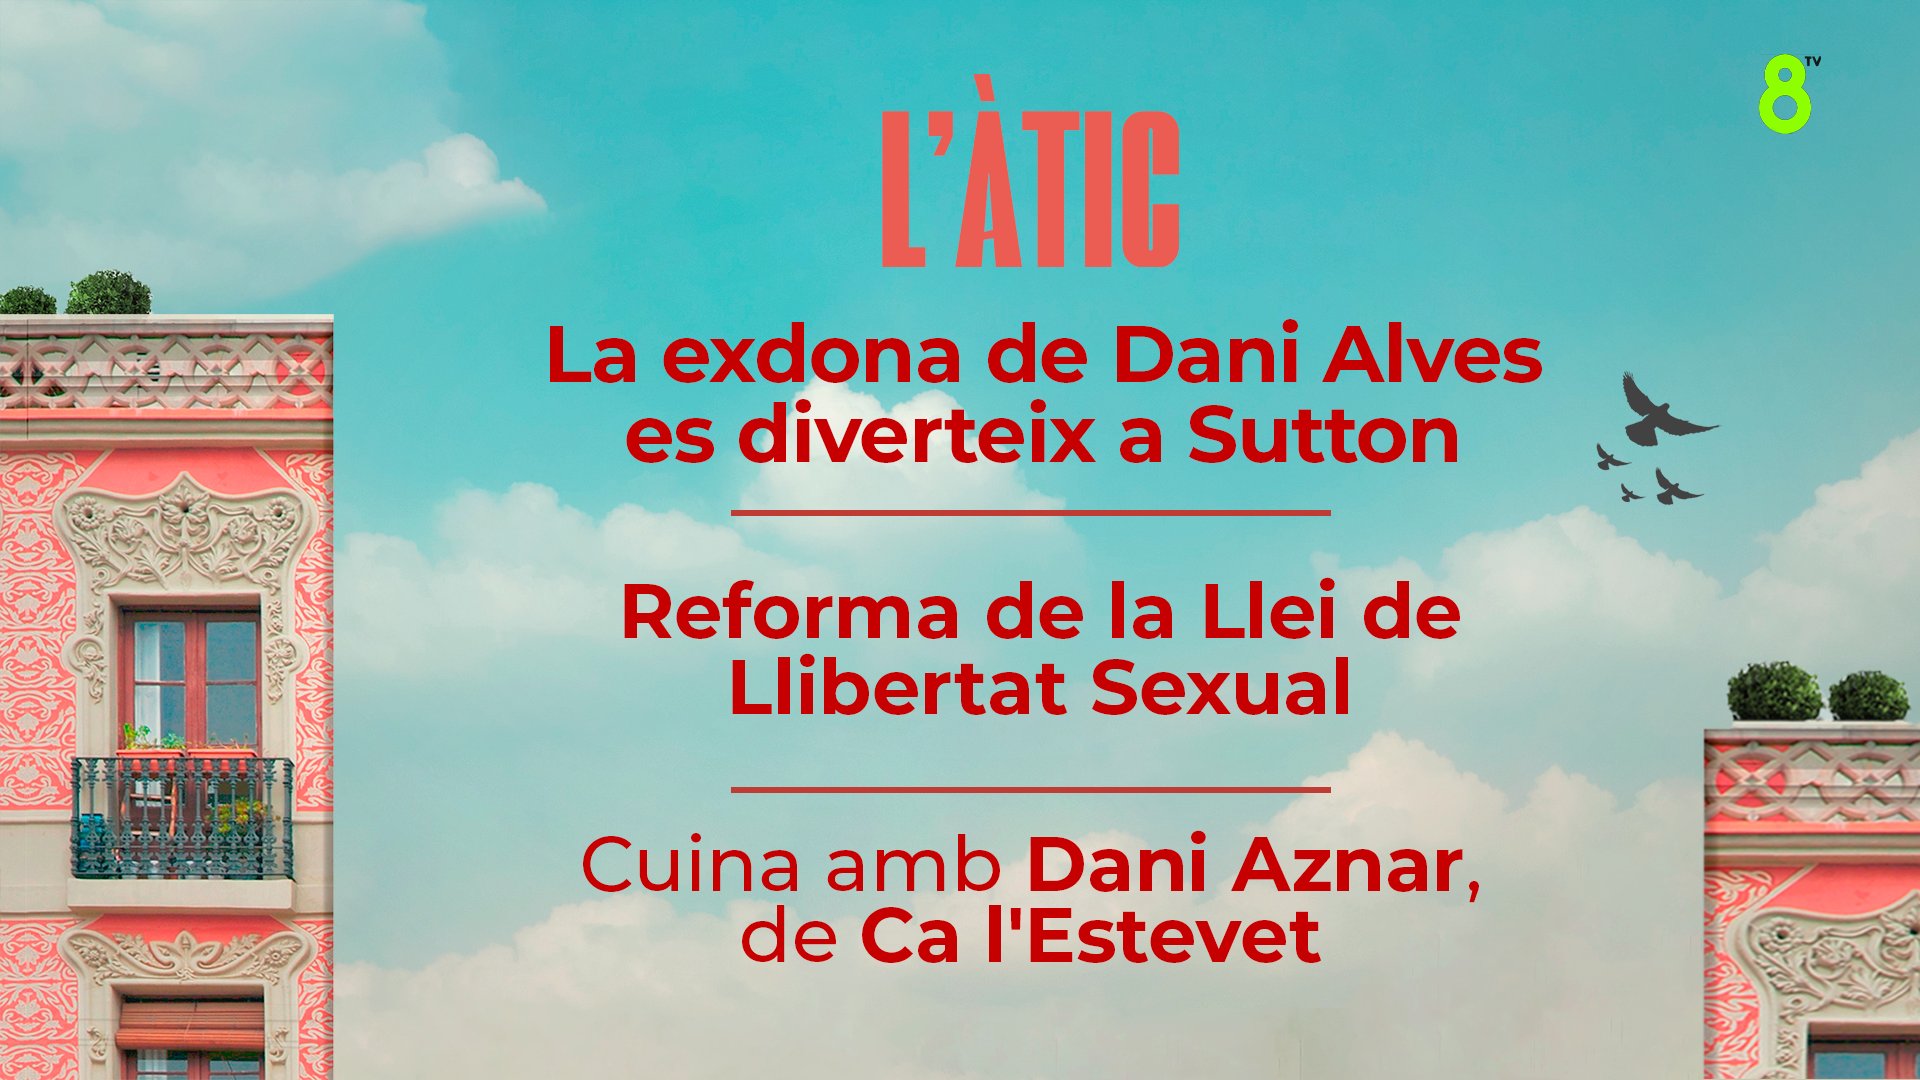 20/04/2023 - L'EXDONA DE DANI ALVES ES DIVERTEIX A SUTON